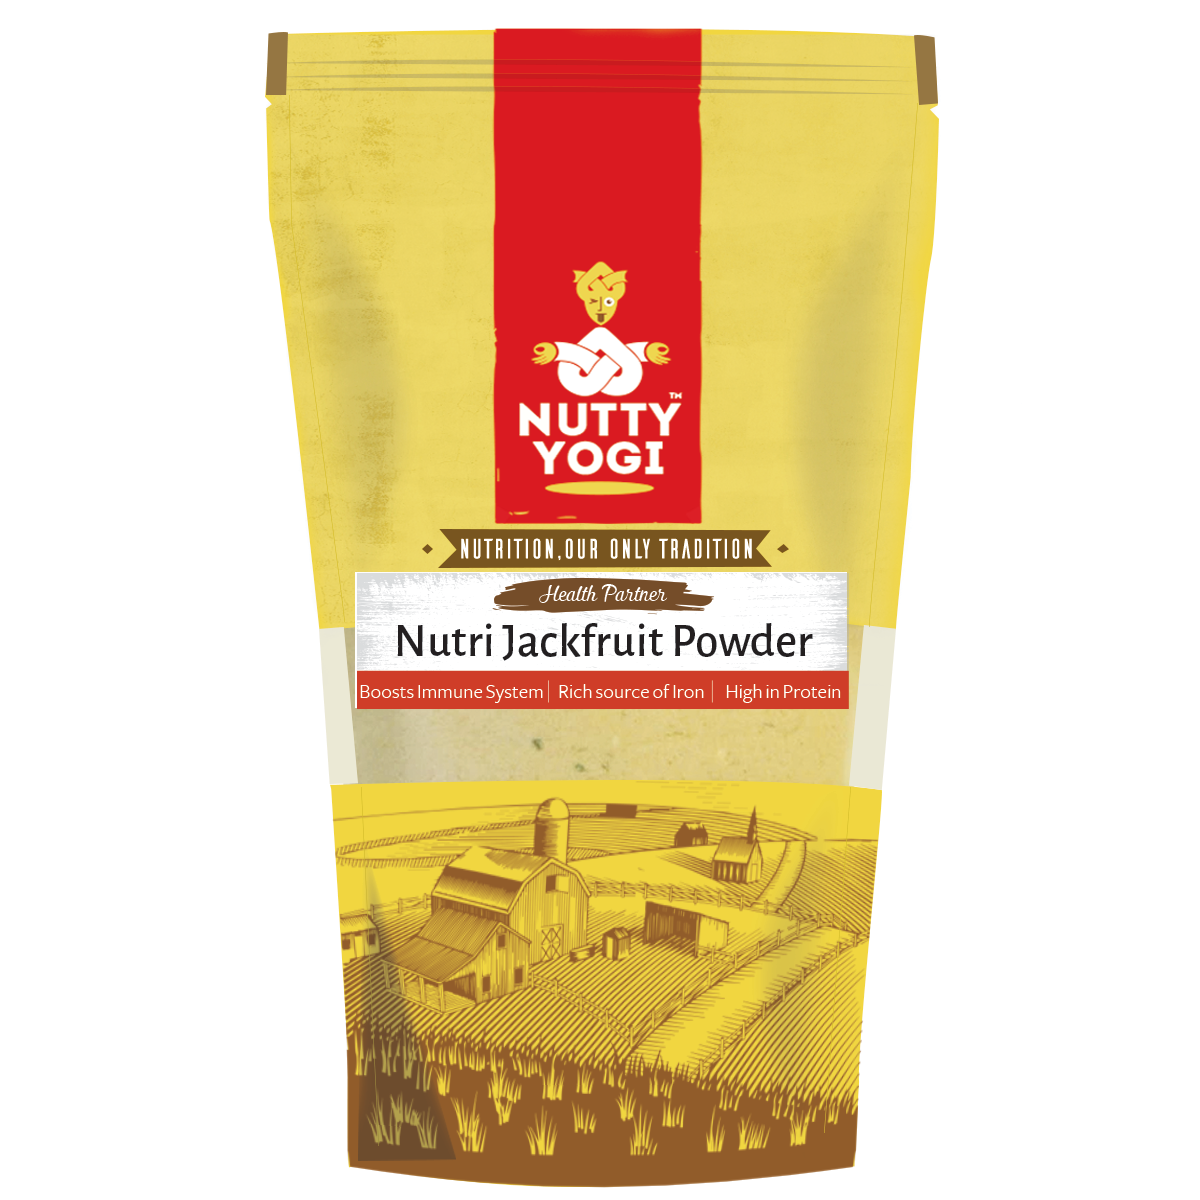 Nutty Yogi Nutri Jackfruit Powder